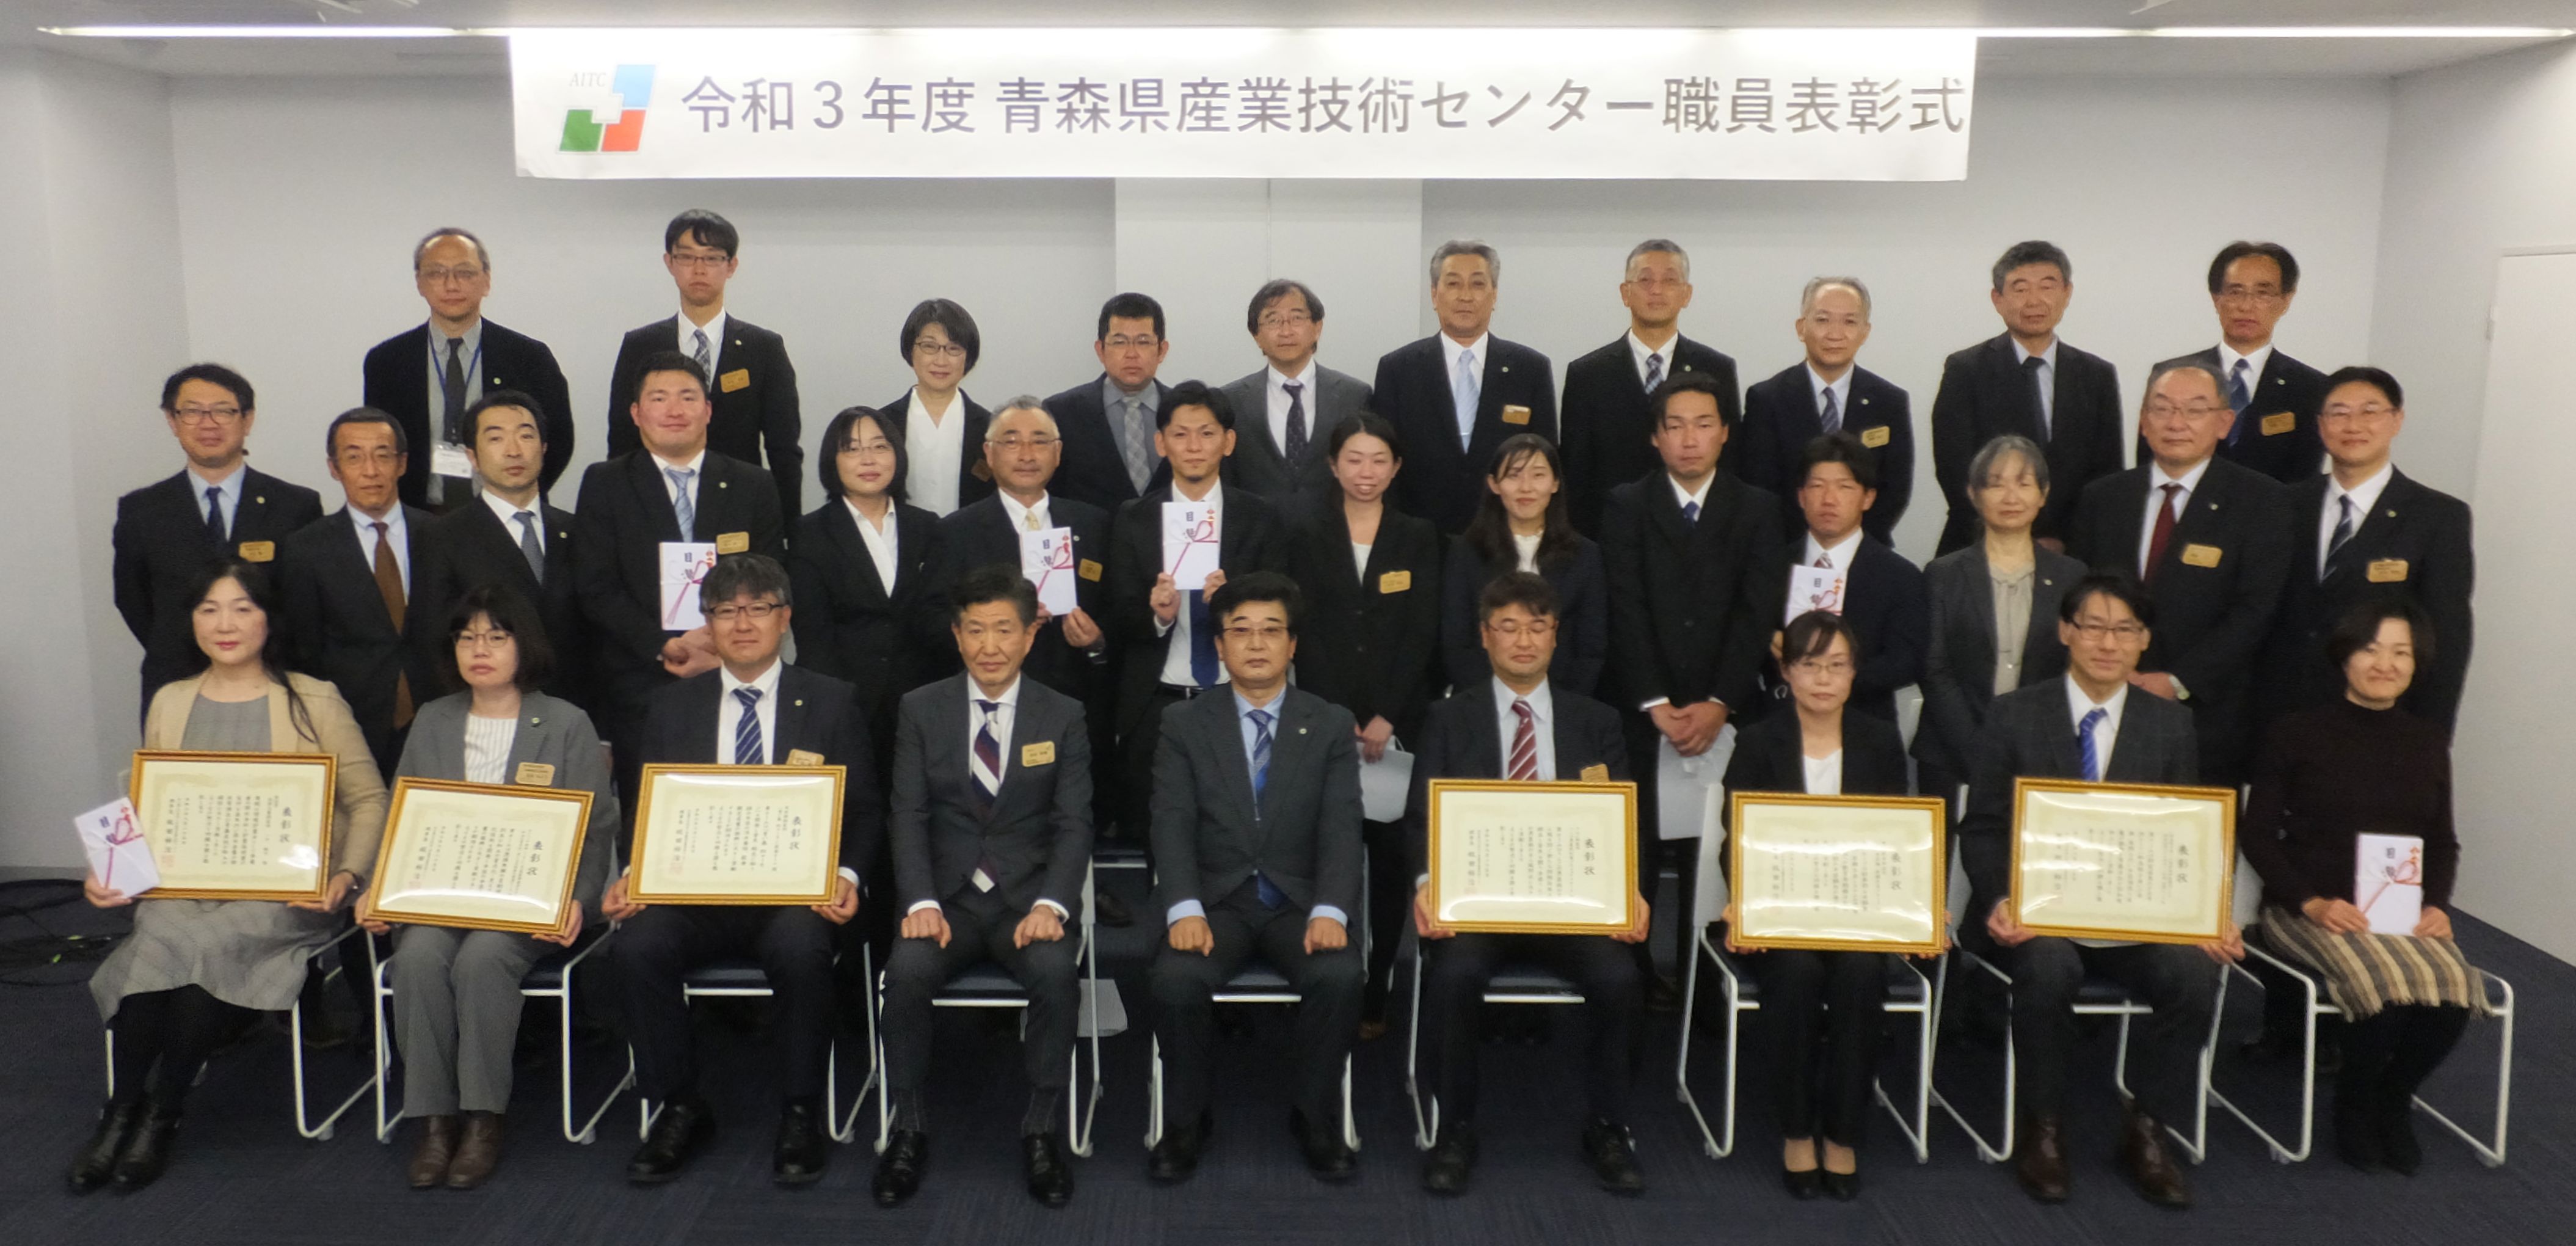 令和３年度職員表彰受賞者の集合写真